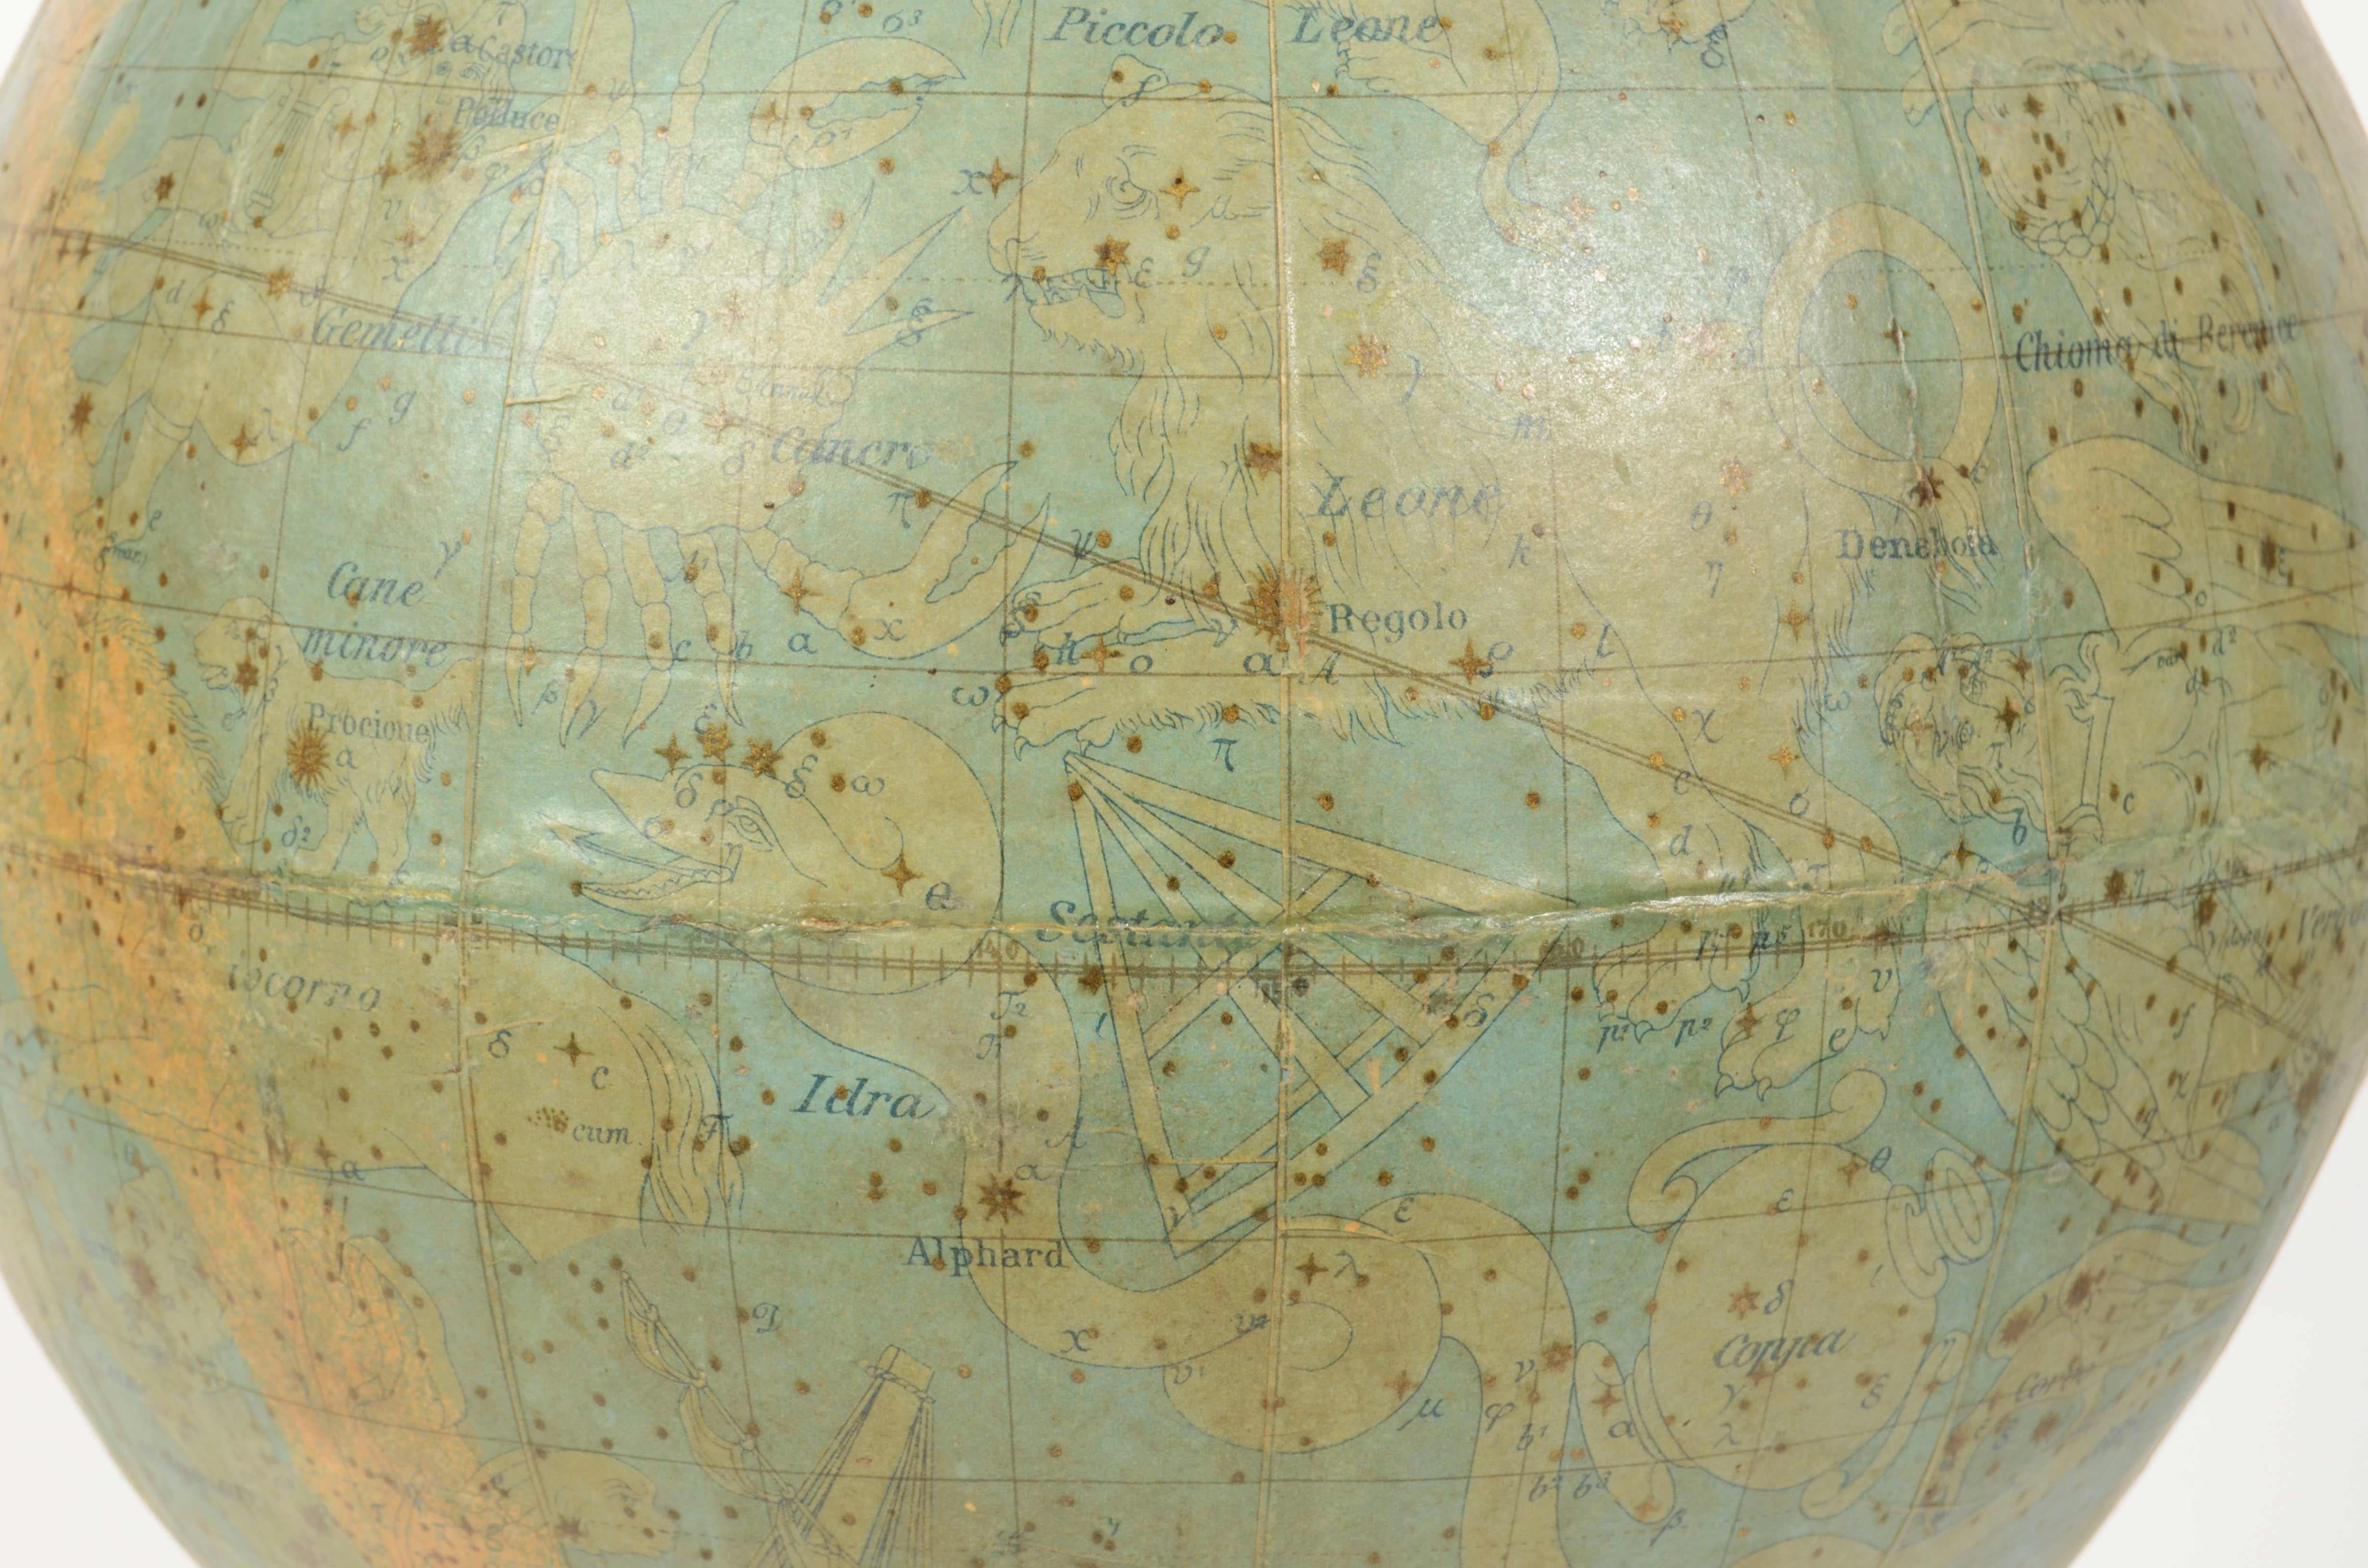 Paper 1889s Antique Celestial Globe Signed Gussoni e Dotti Milano Papier Maché Sphere For Sale